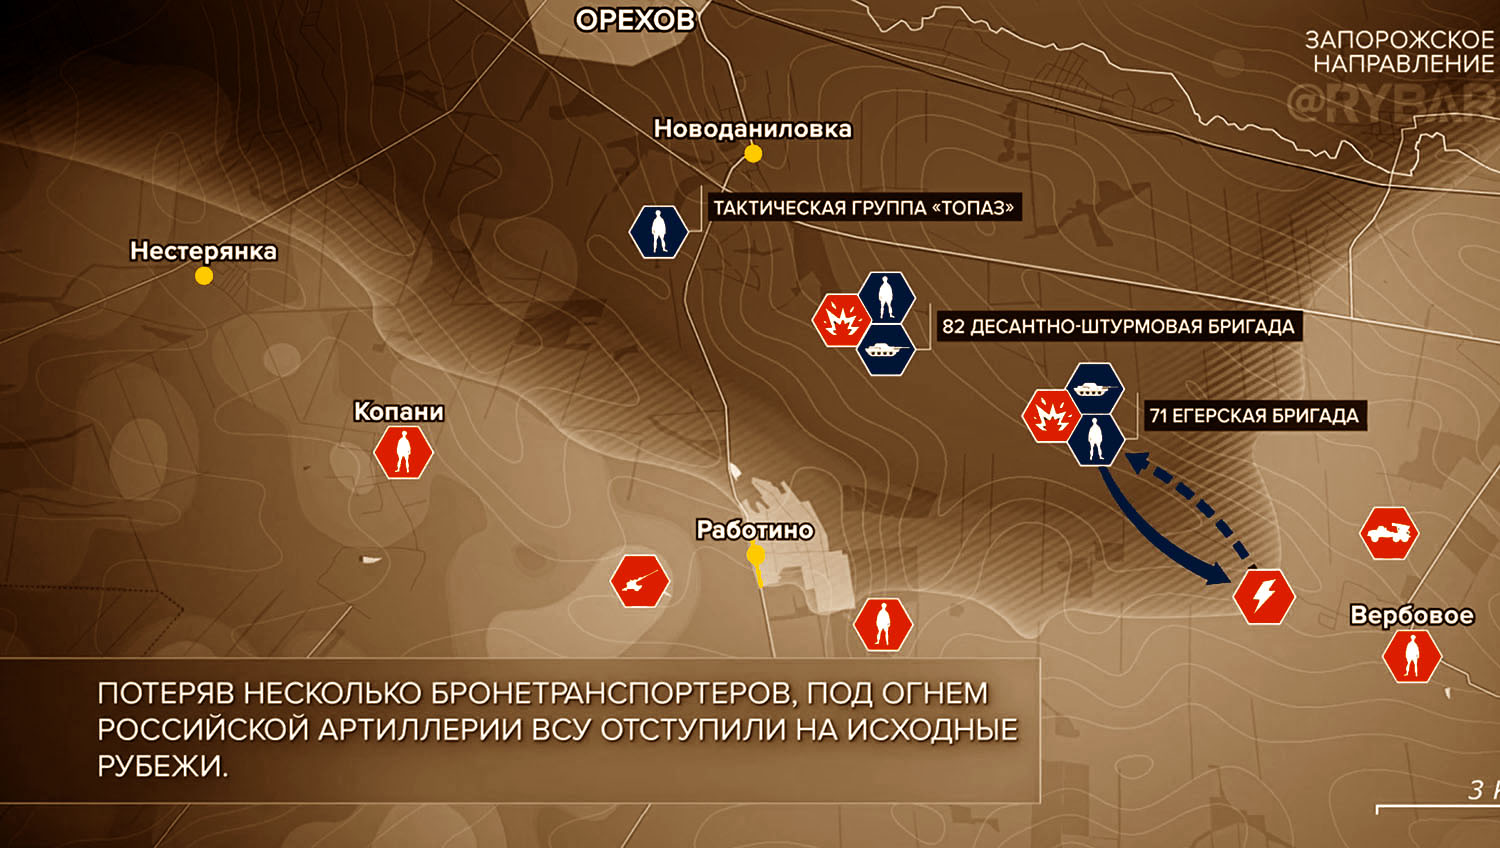 Карта боевых действий на Украине, Запорожское направление, к утру 10.11.23 г. Карта СВО от «Рыбарь».